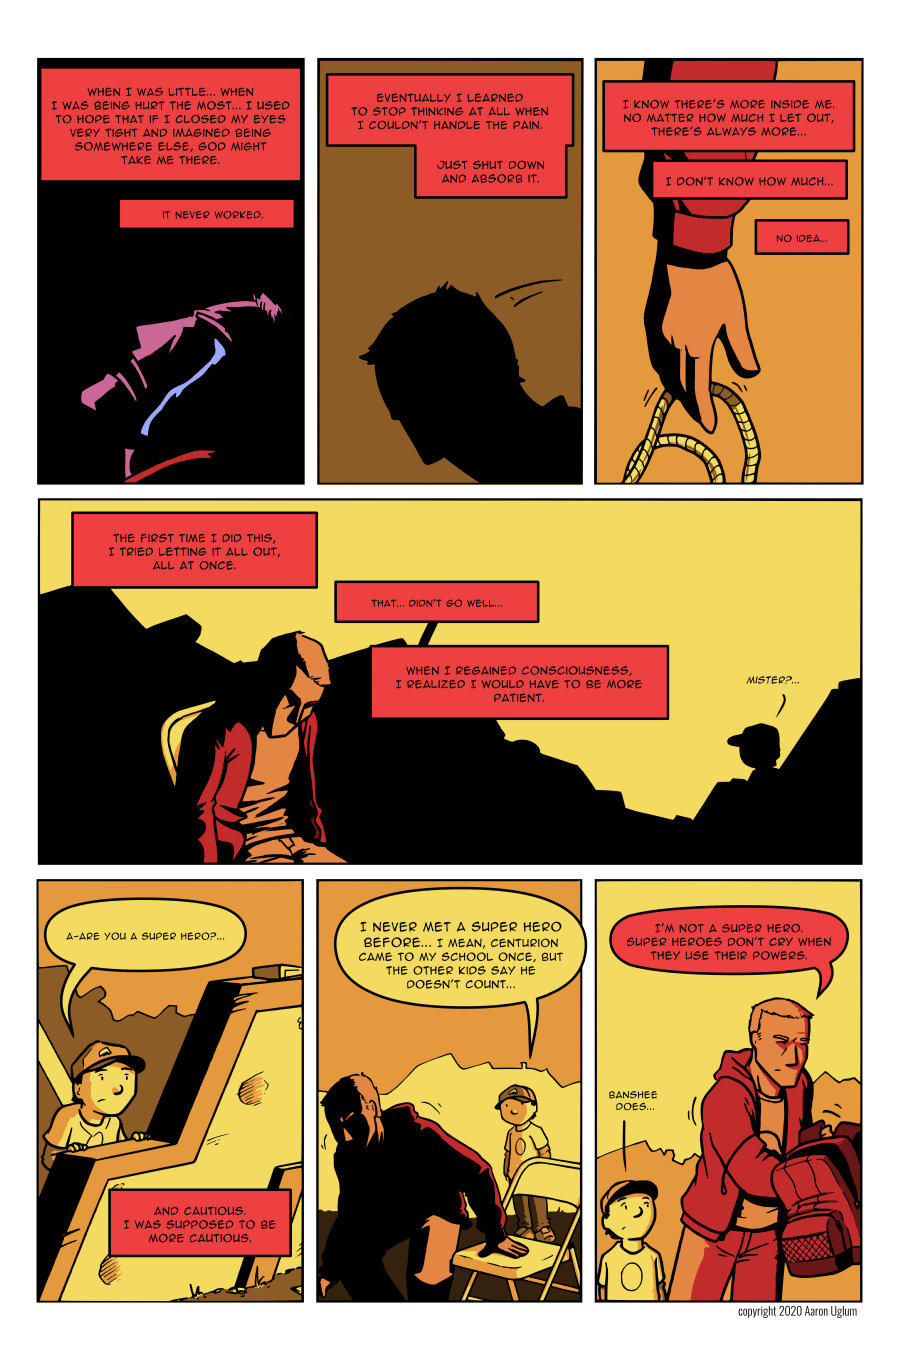 BRYN - page five